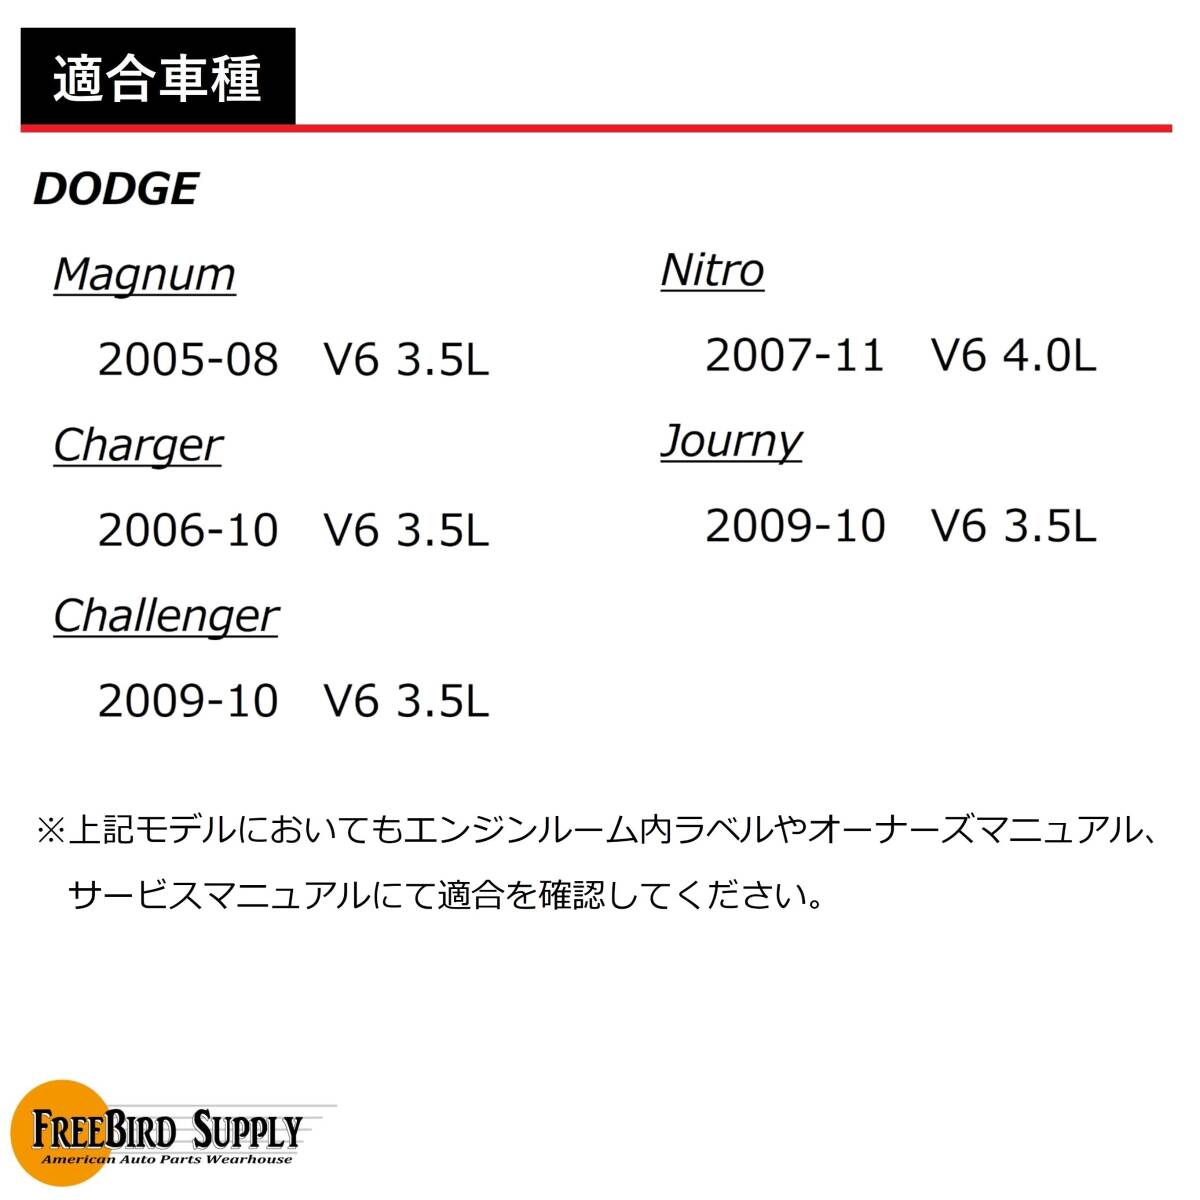 DMG321#1 チャンピオン スパークプラグ 6本セット ダッジ V6 3.5L/4.0L用 チャージャー マグナム チャレンジャー ナイトロ ジャーニー_画像2